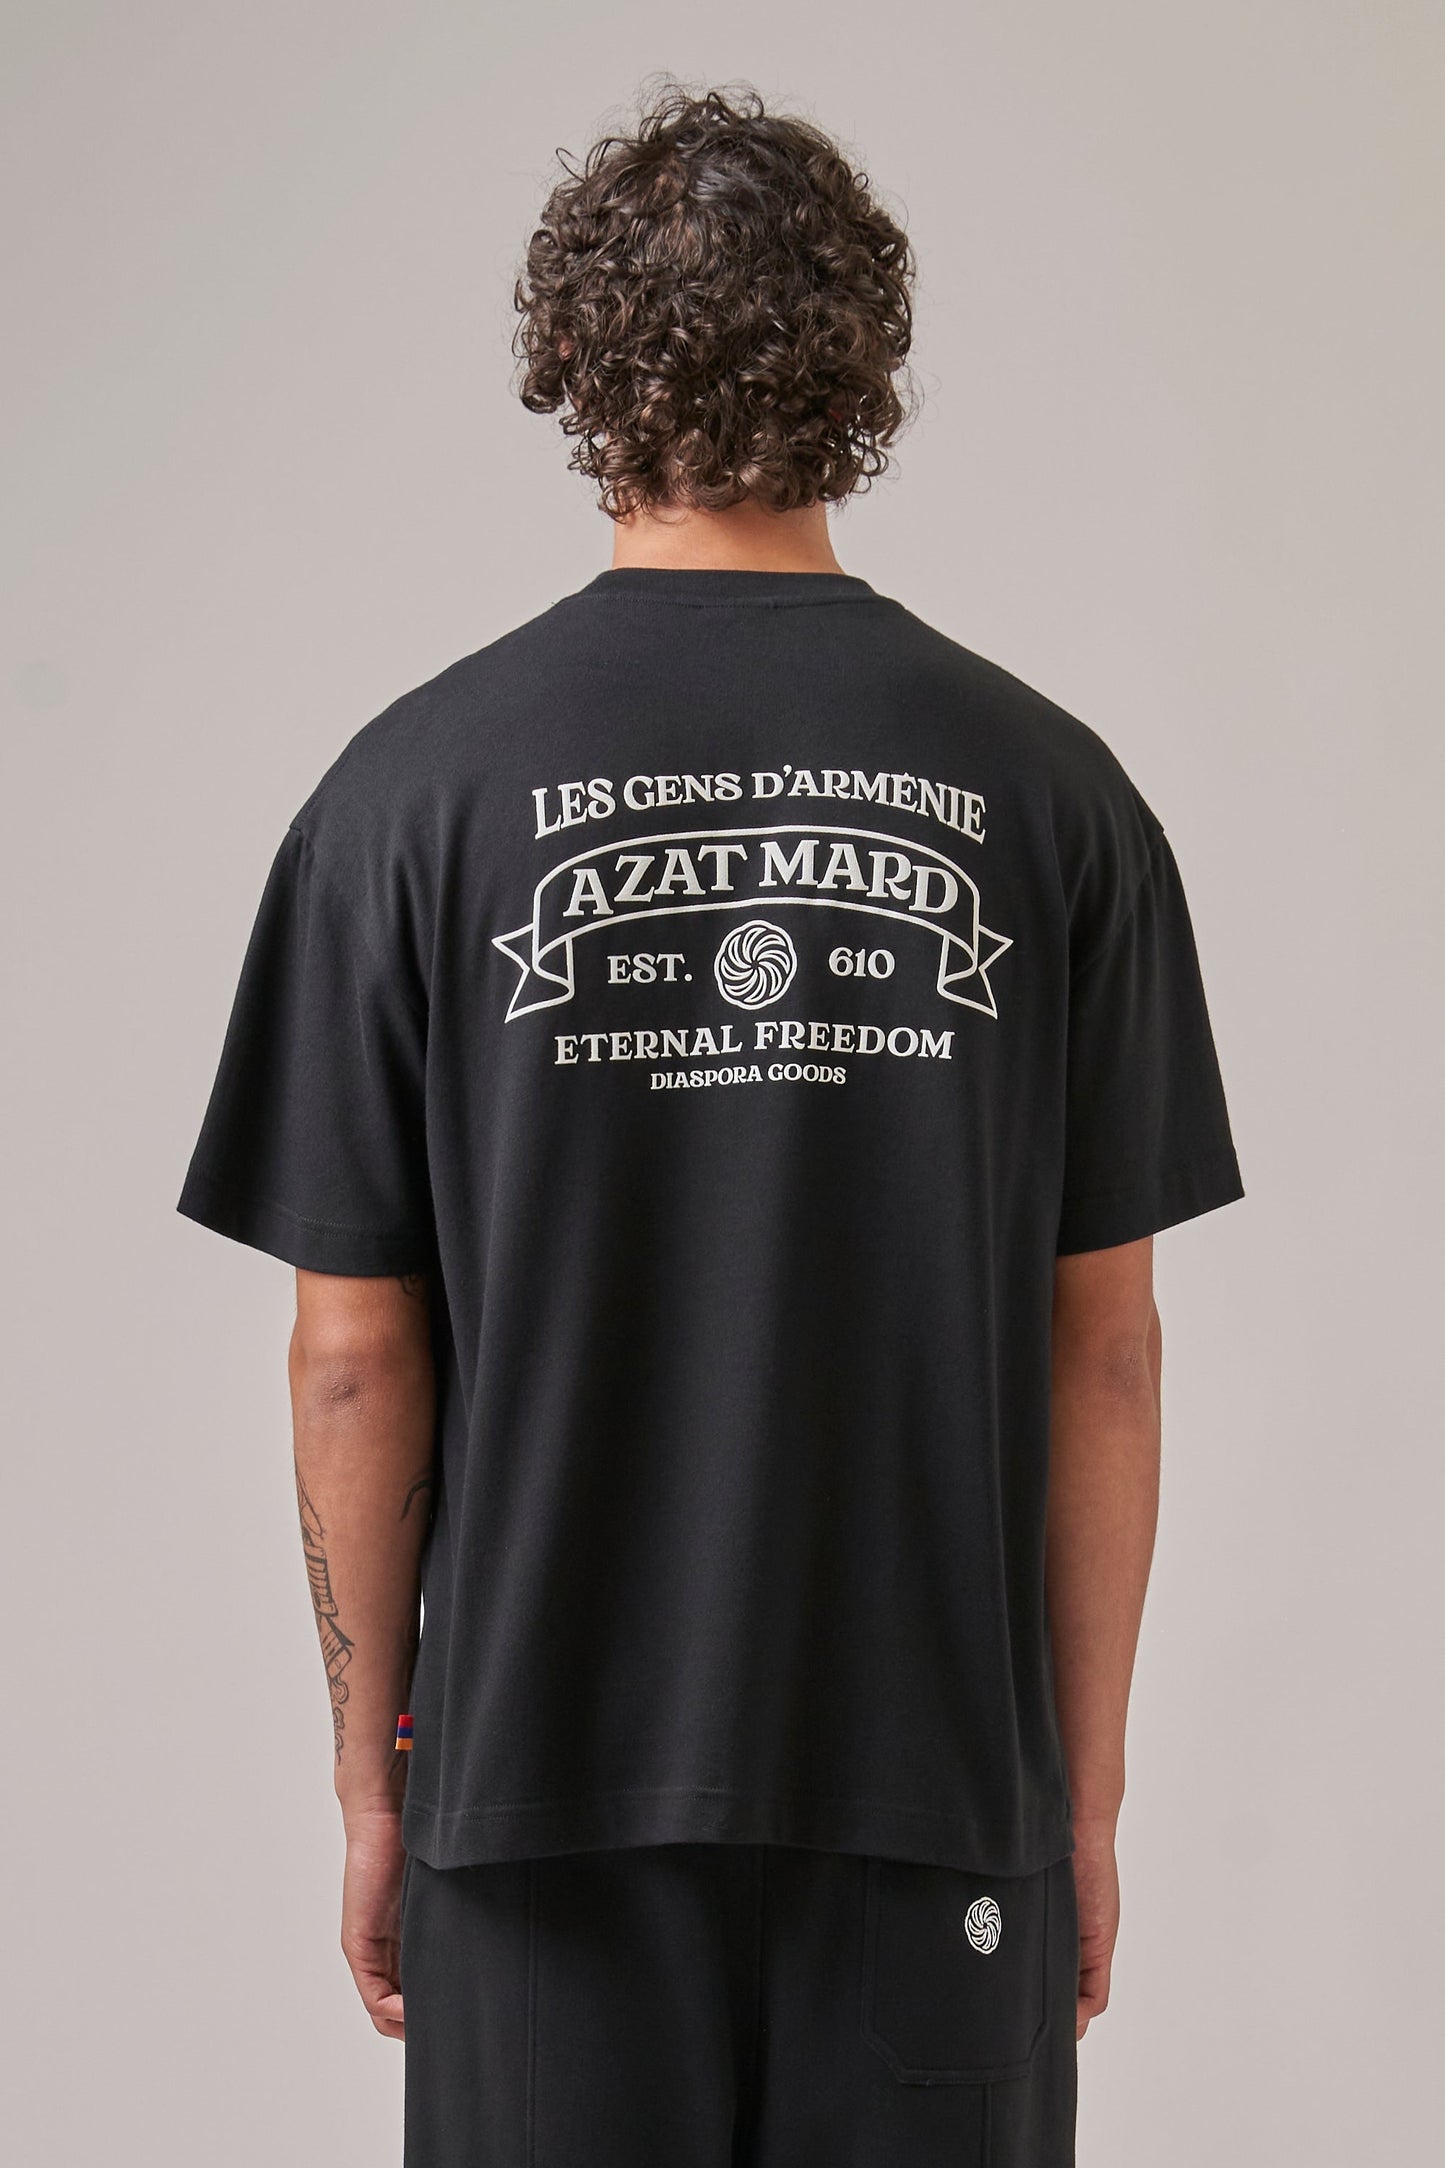 ETERNAL FREEDOM T-SHIRT